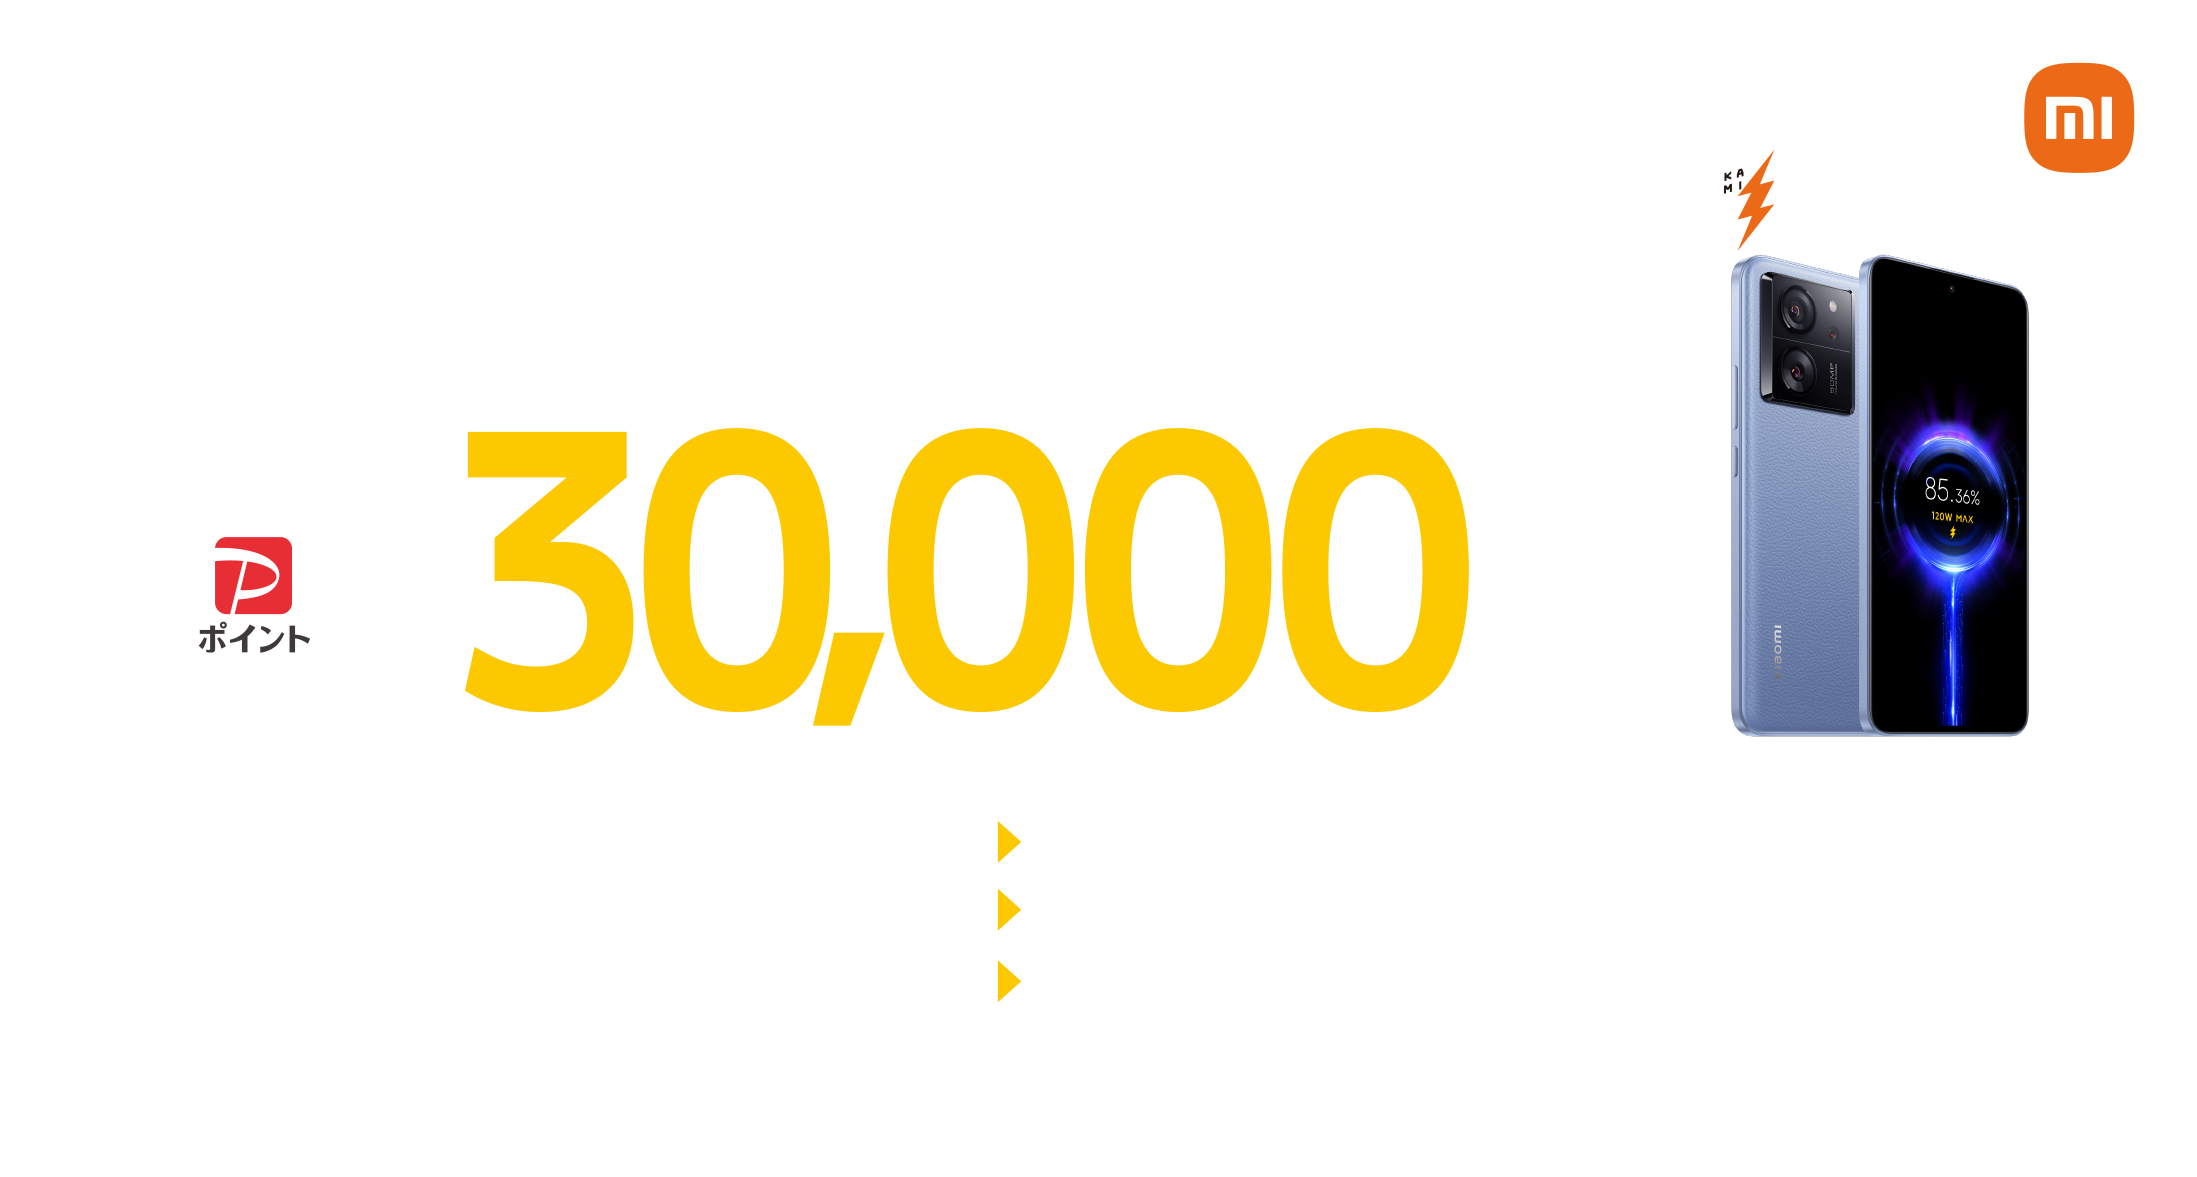 Xiaomi 13T Pro のご購入&ご応募でPayPayポイント最大30,000円相当プレゼント